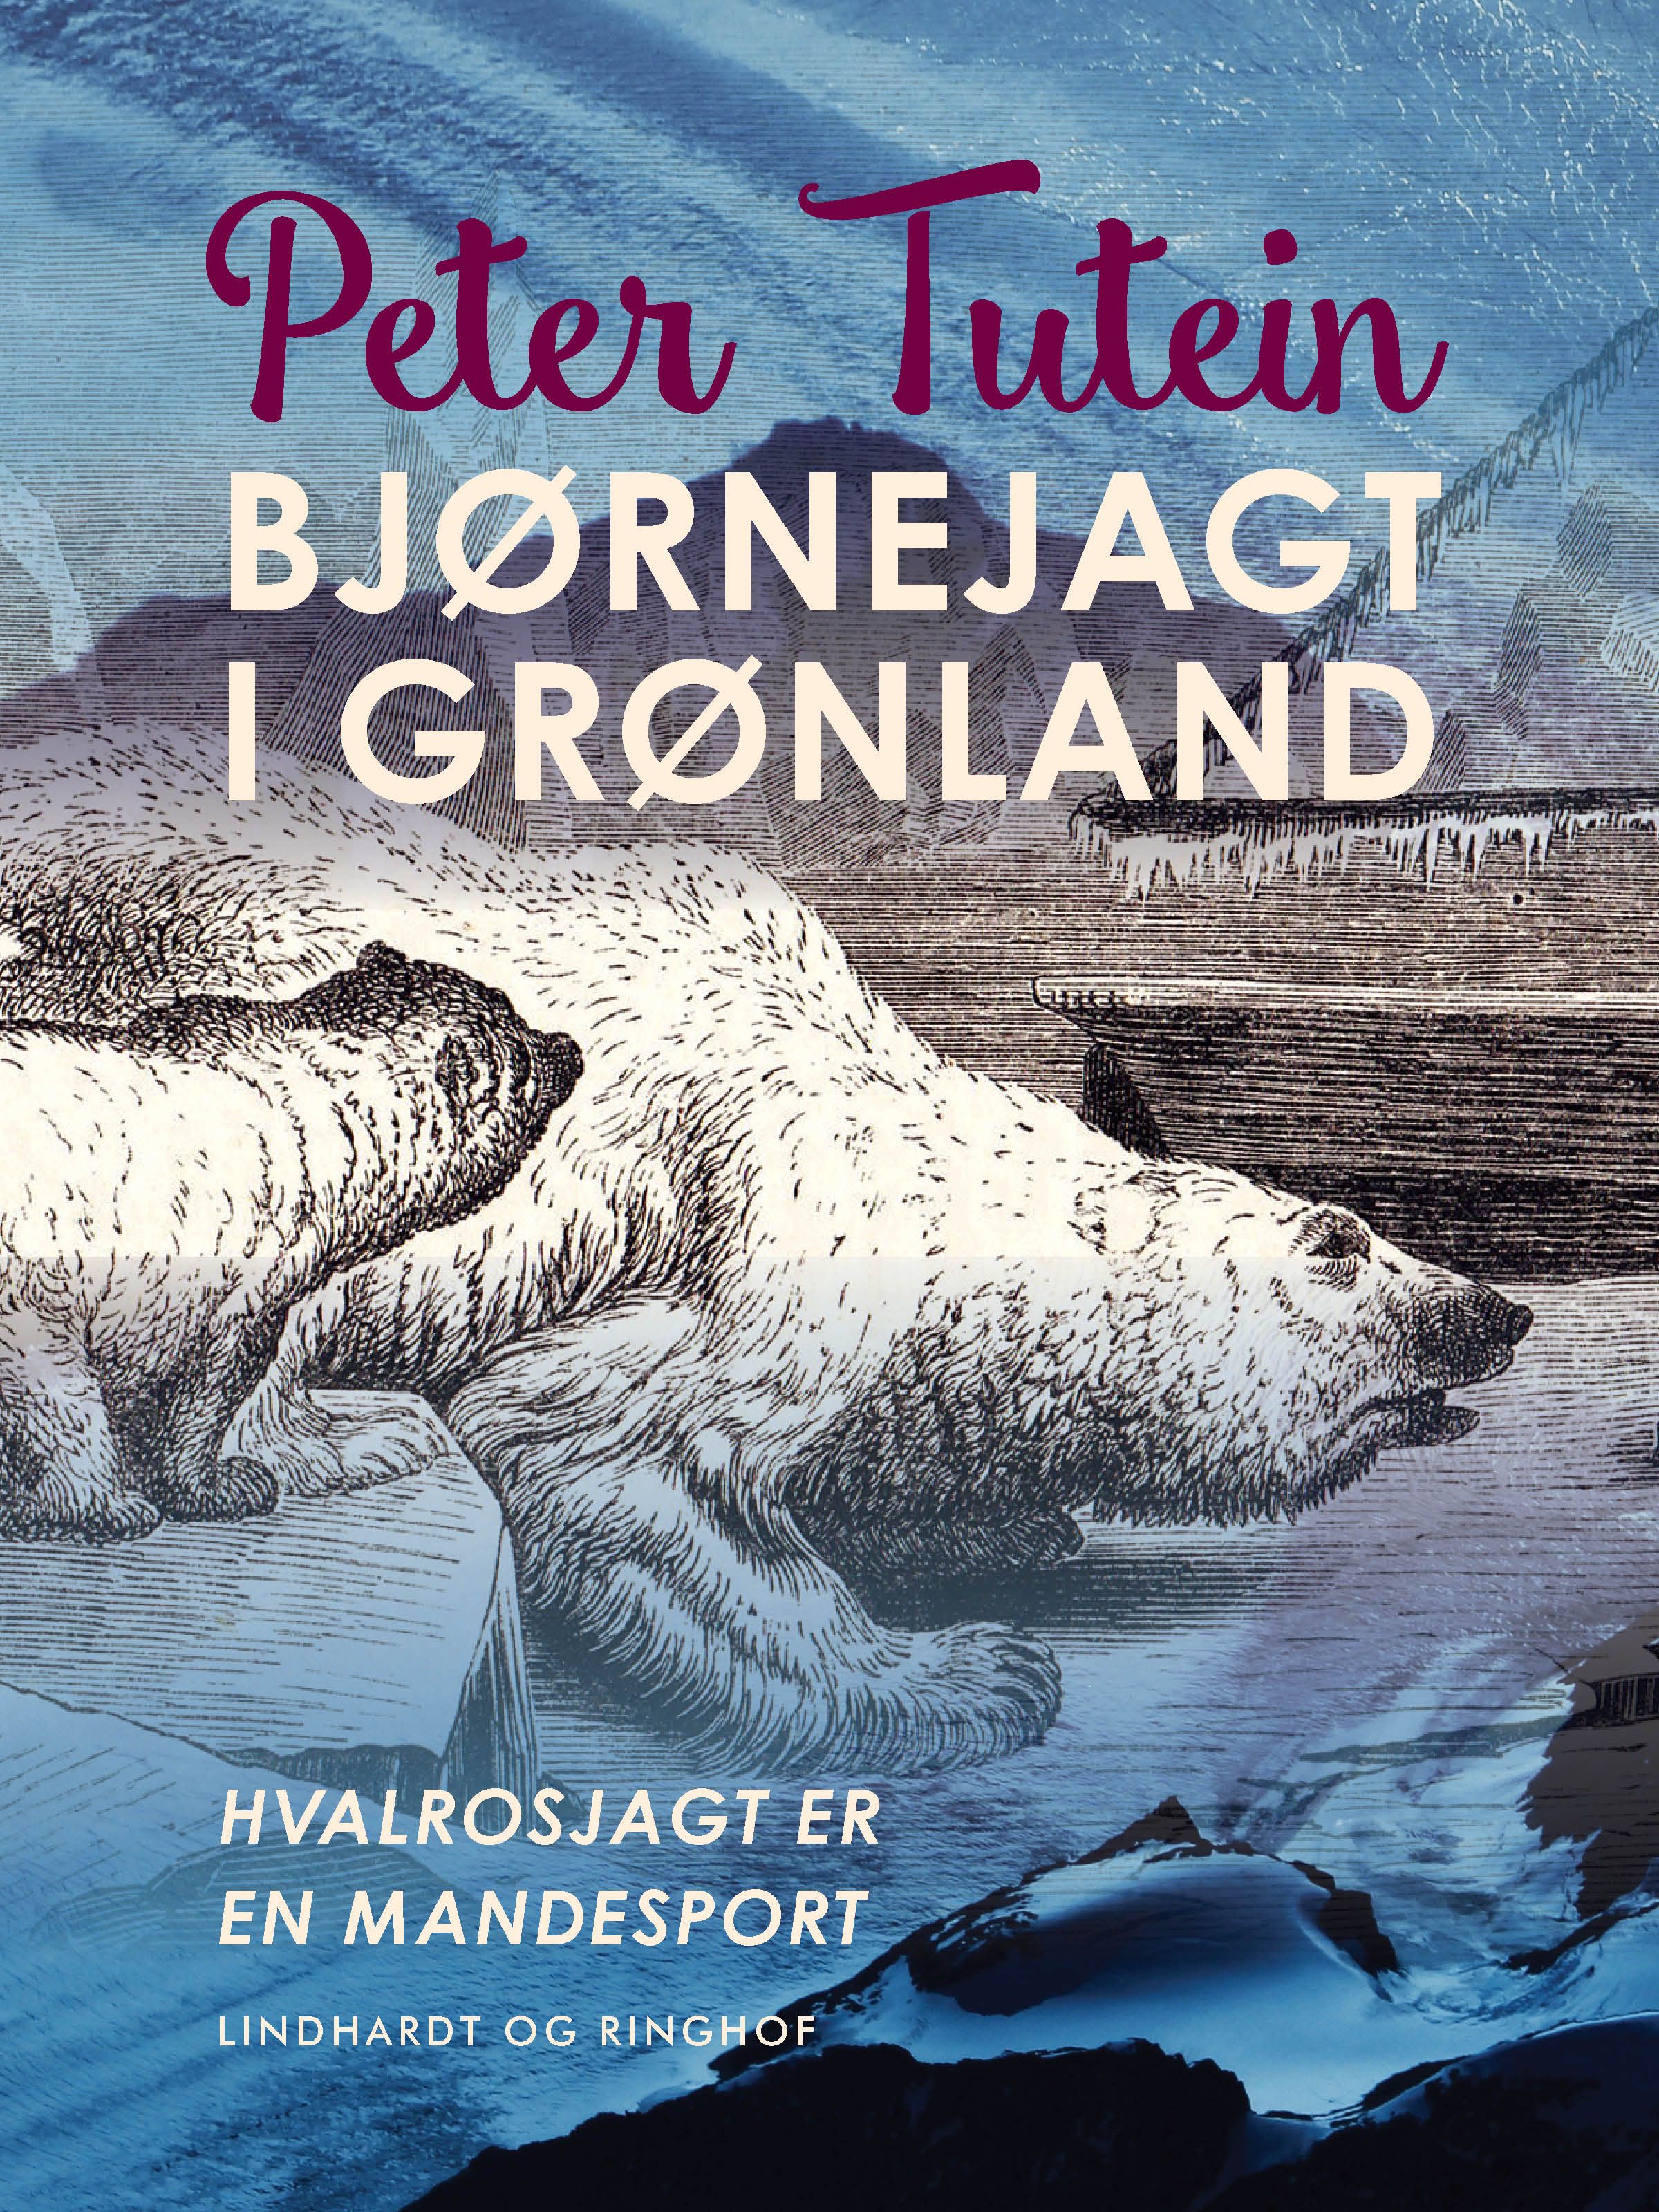 Bjørnejagt i Grønland. Hvalrosjagt er en mandesport, e-bog af Peter Tutein